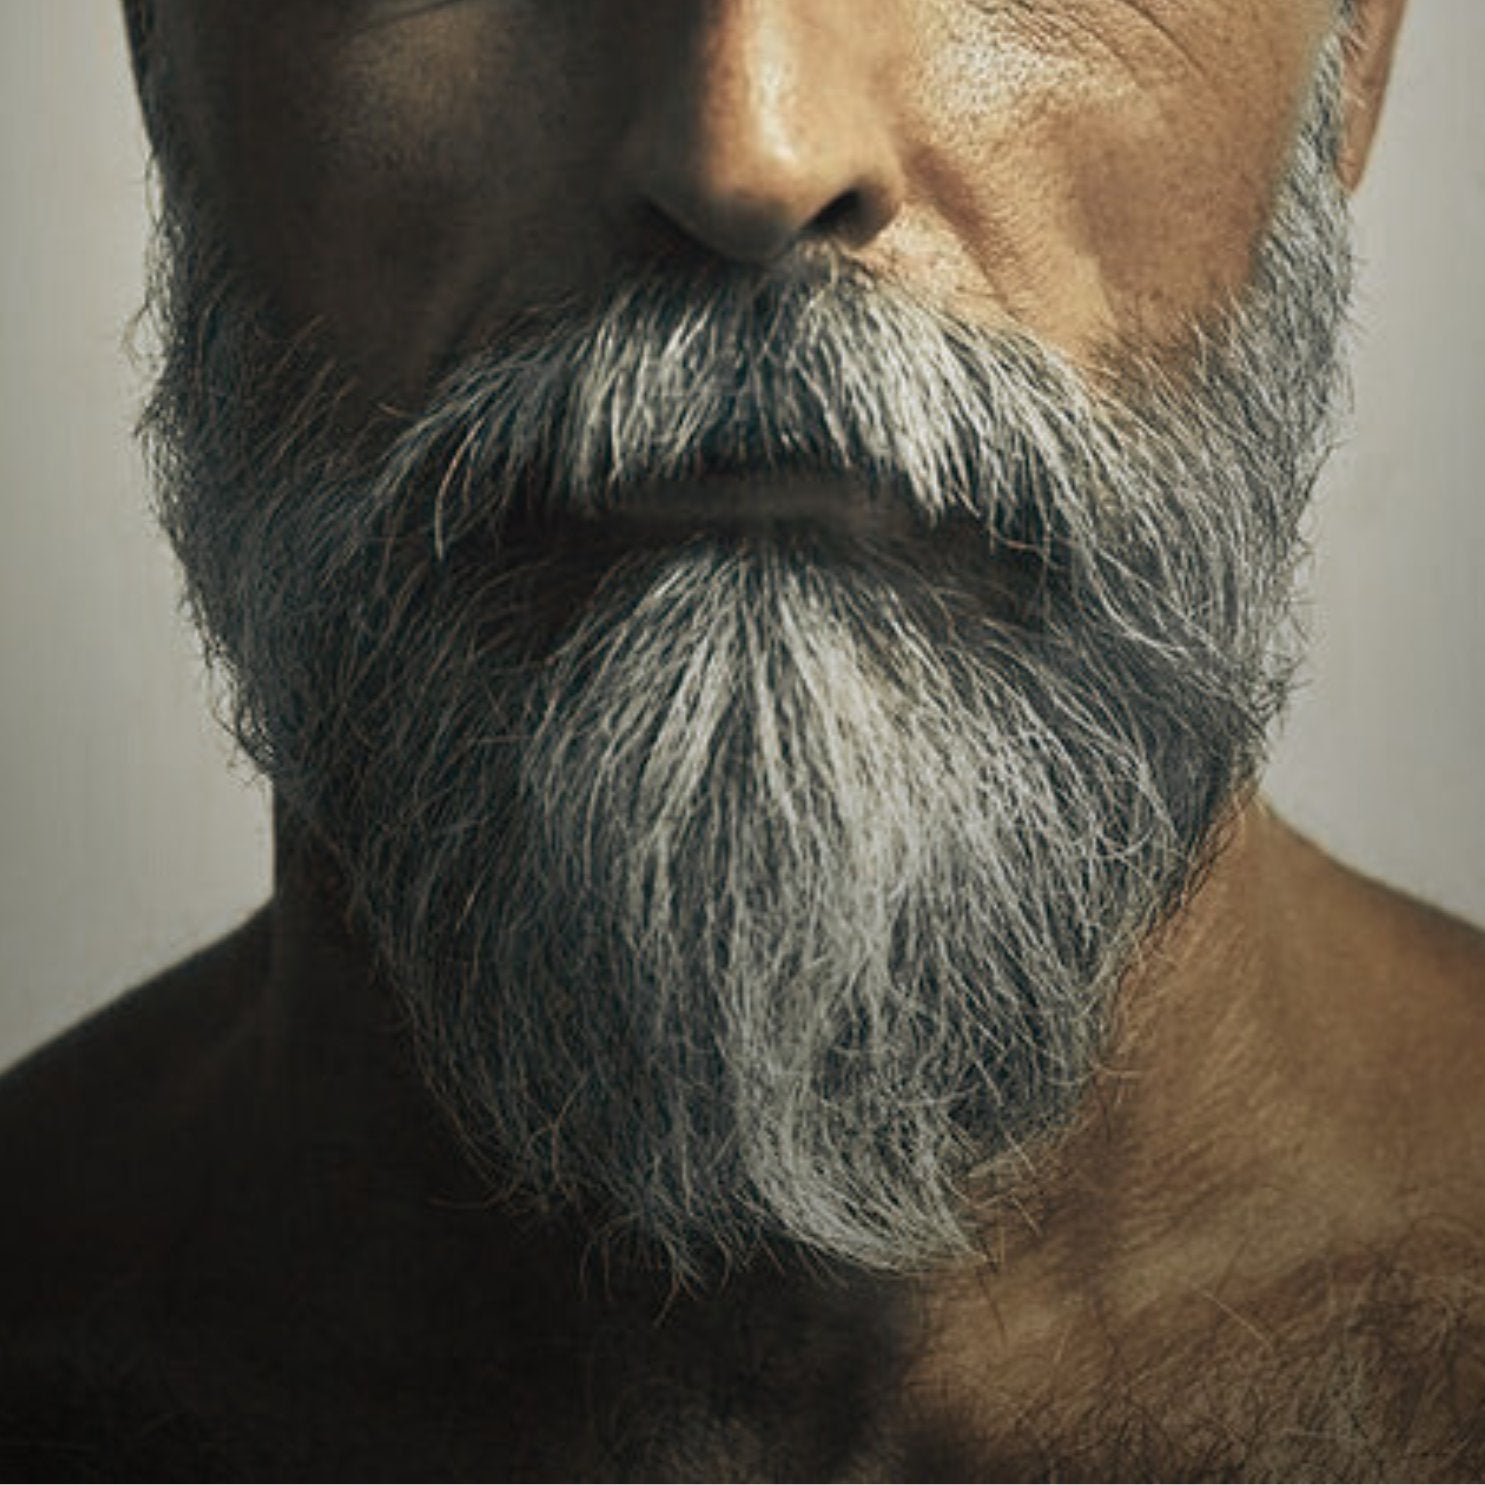 Natural Beard Care